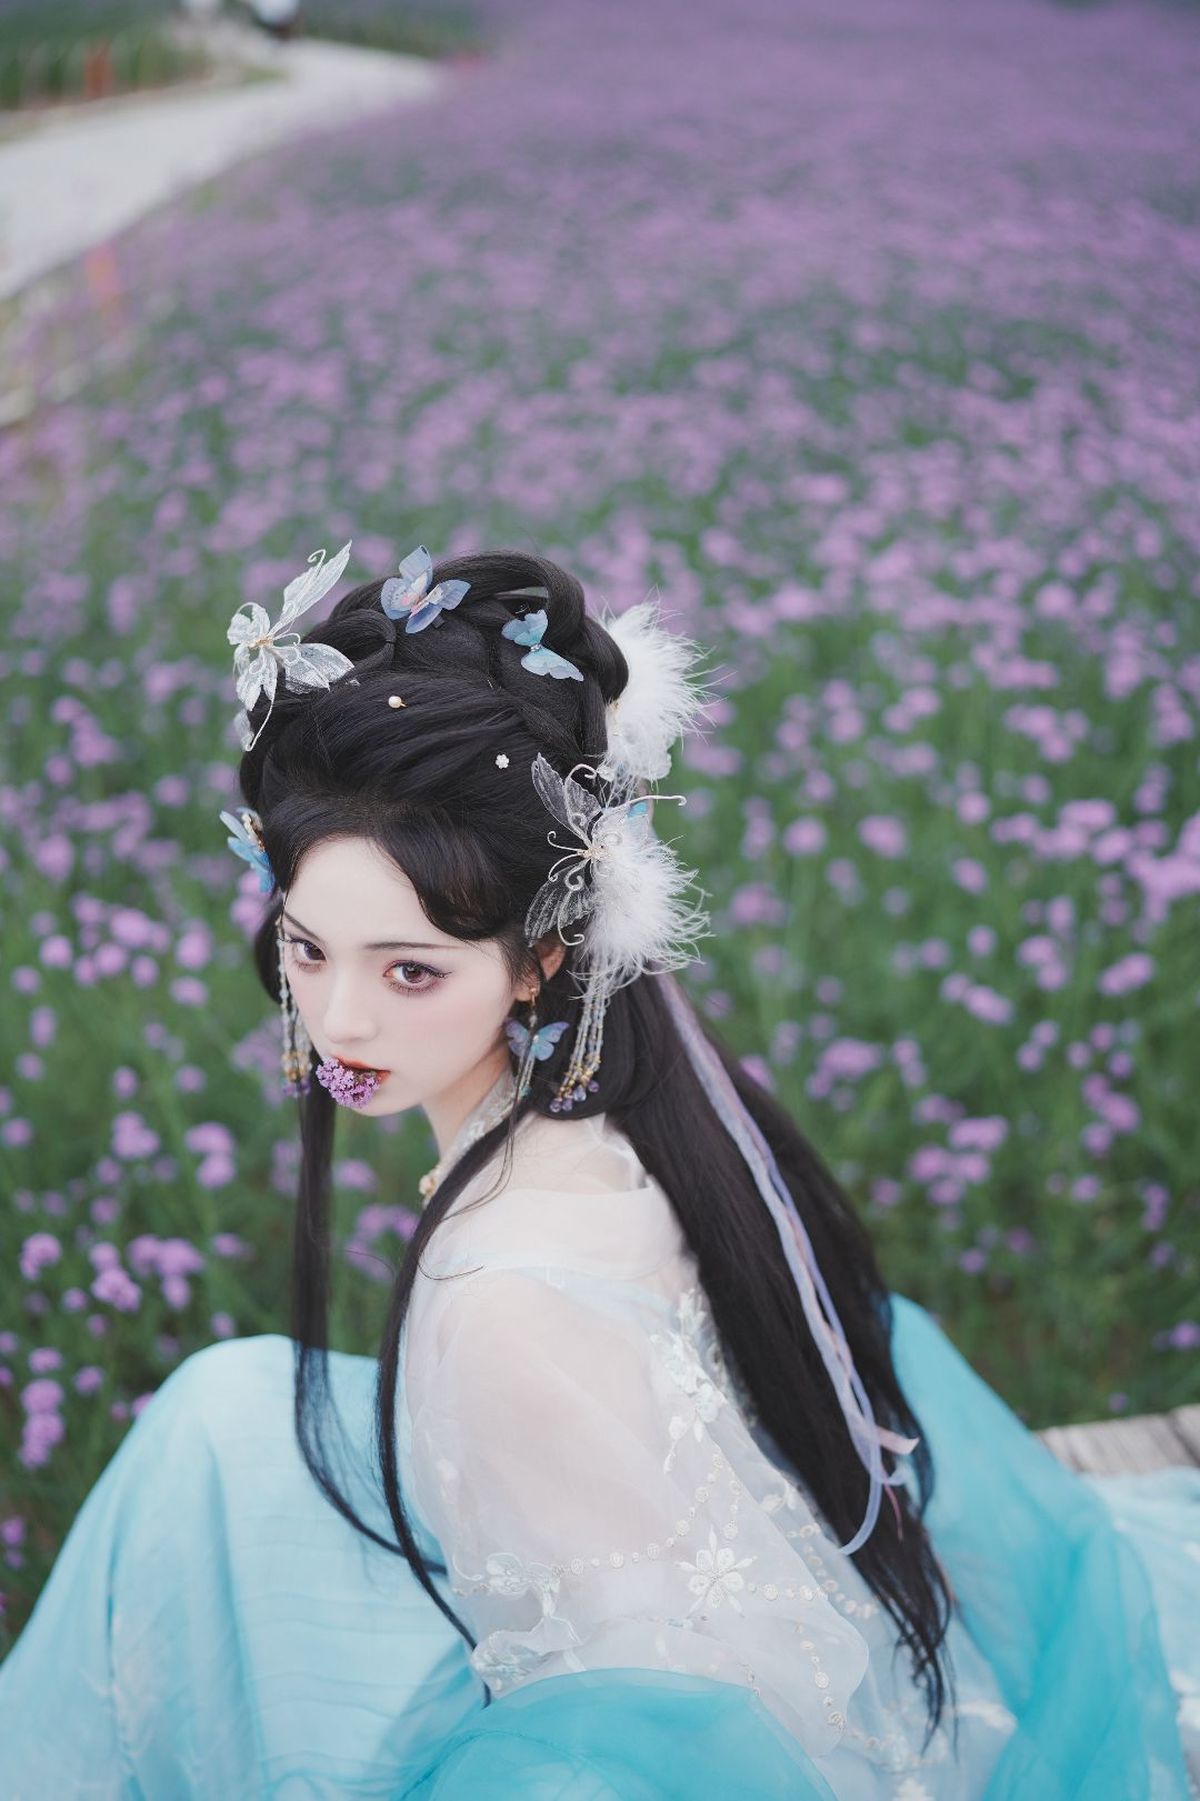 一位穿着传统裙子的美丽年轻女子 蓝发 置身于紫花丛中。